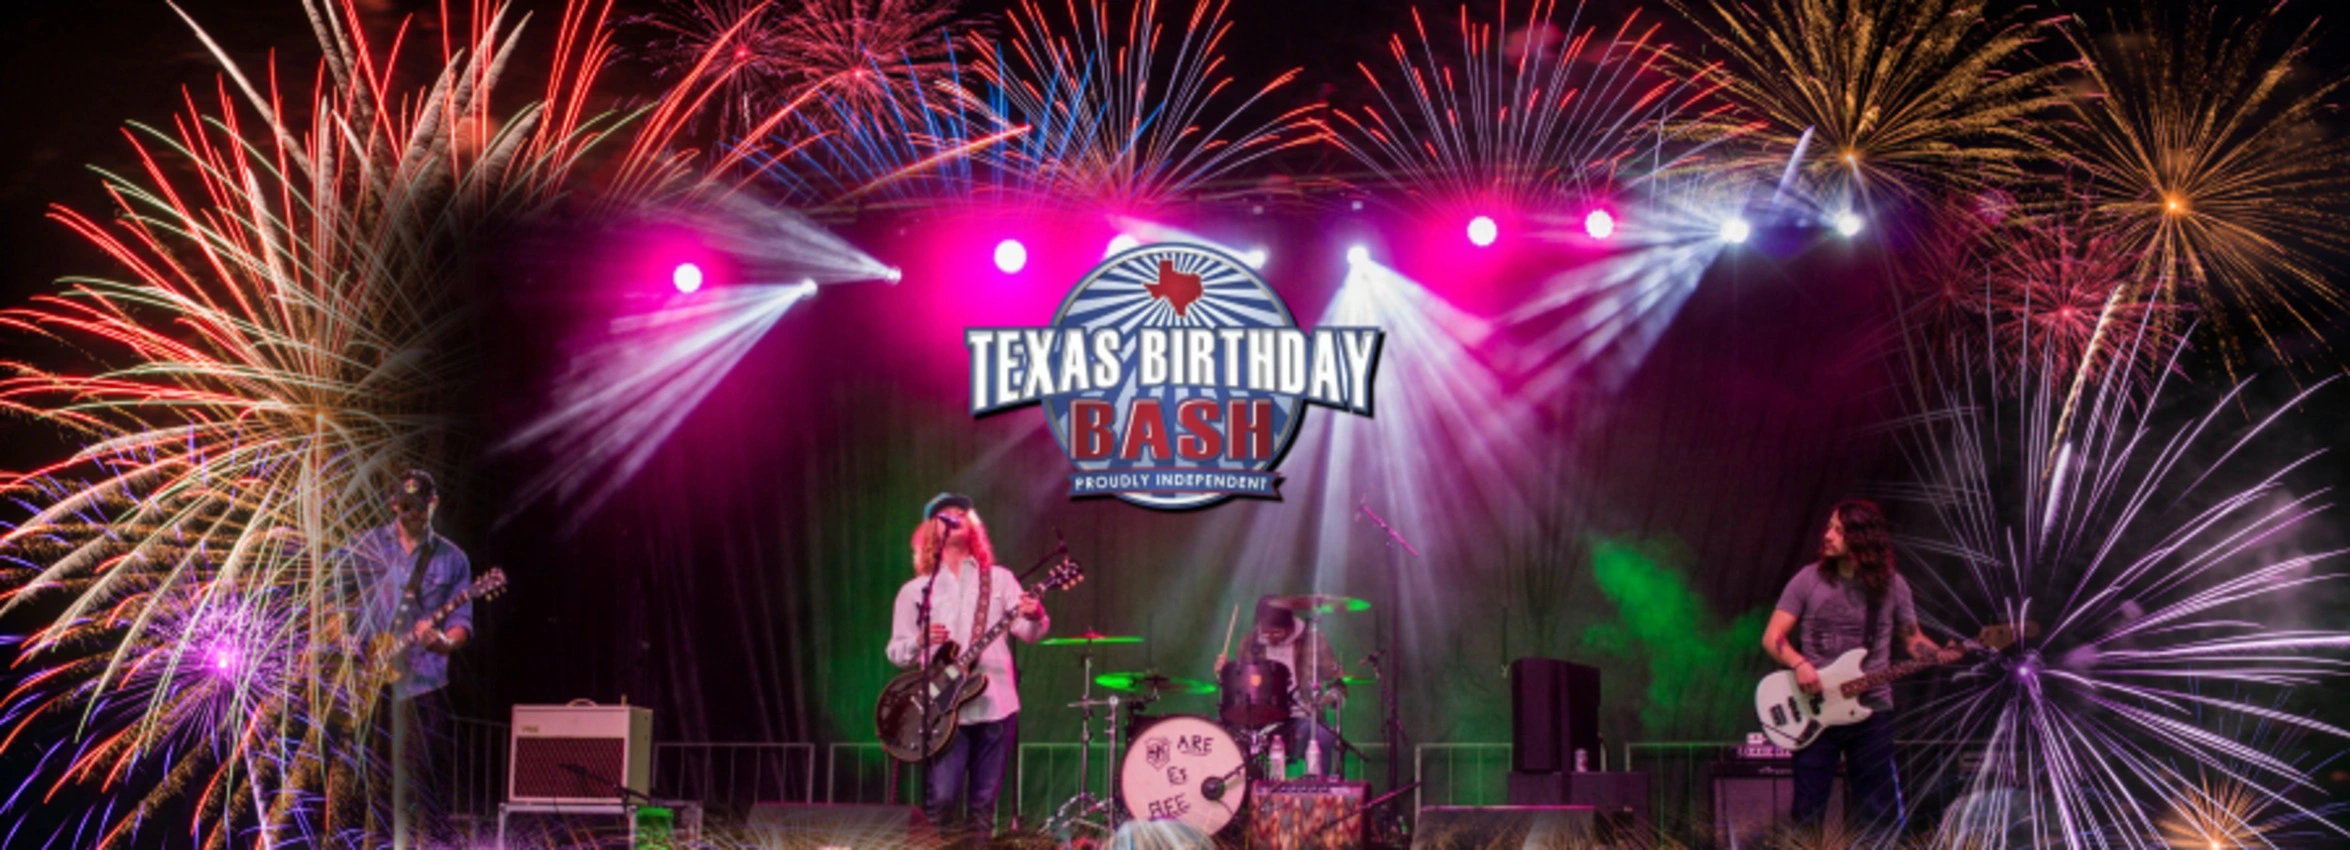 Texas-Birthday-Bash